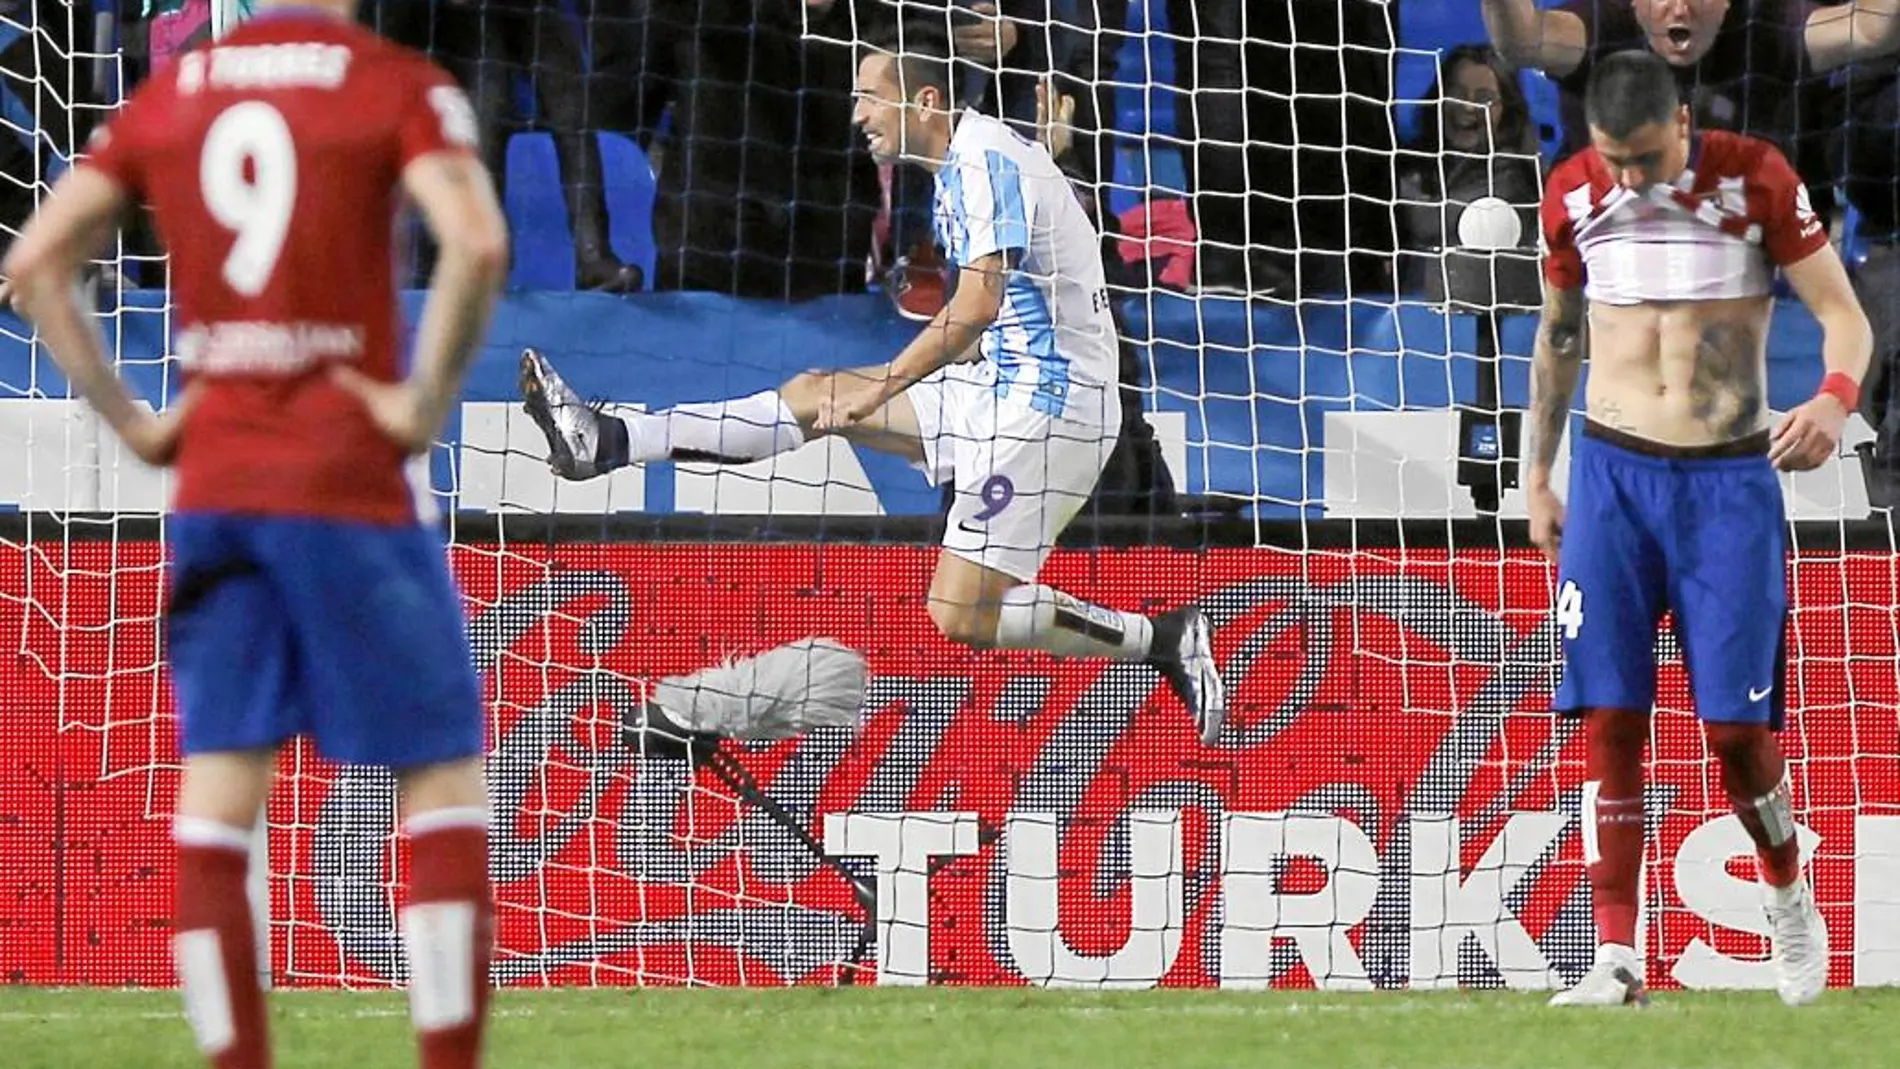 Charles celebra el gol, mientras Giménez muerde la camiseta y Torres mira